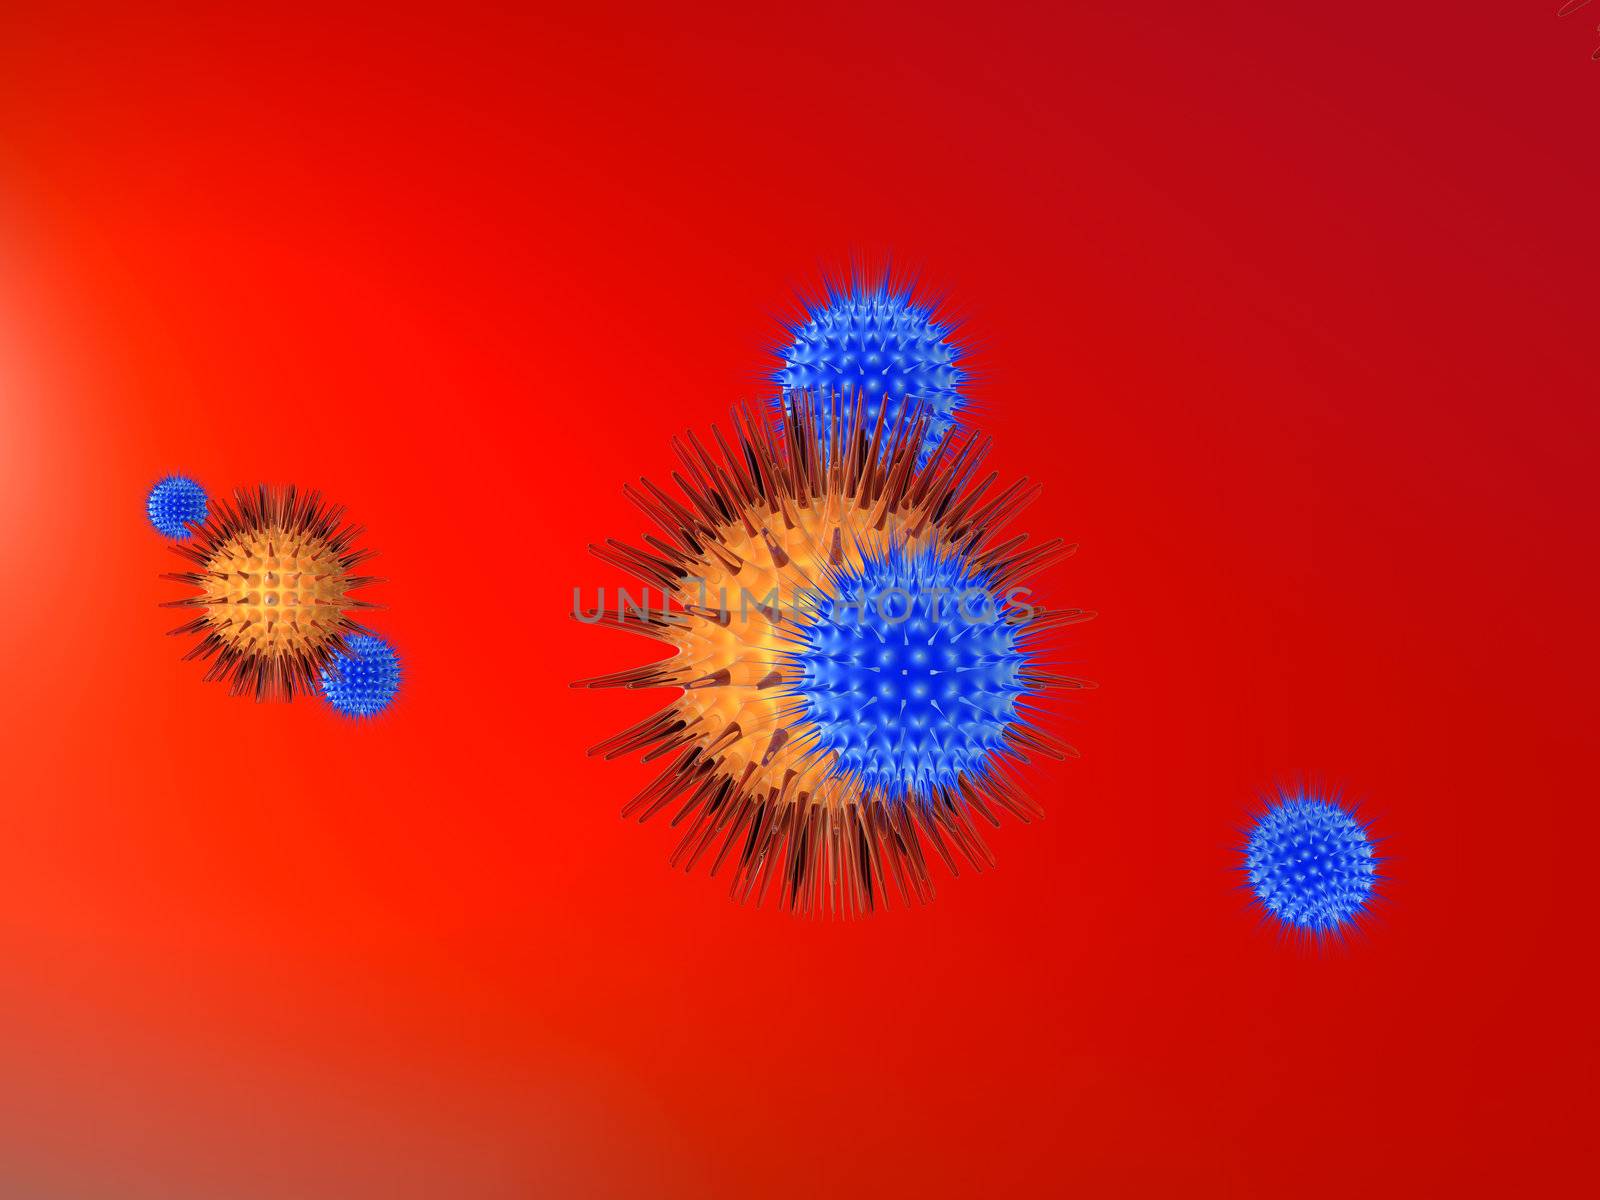 Viruses vs. Immune System 2 by Spectral